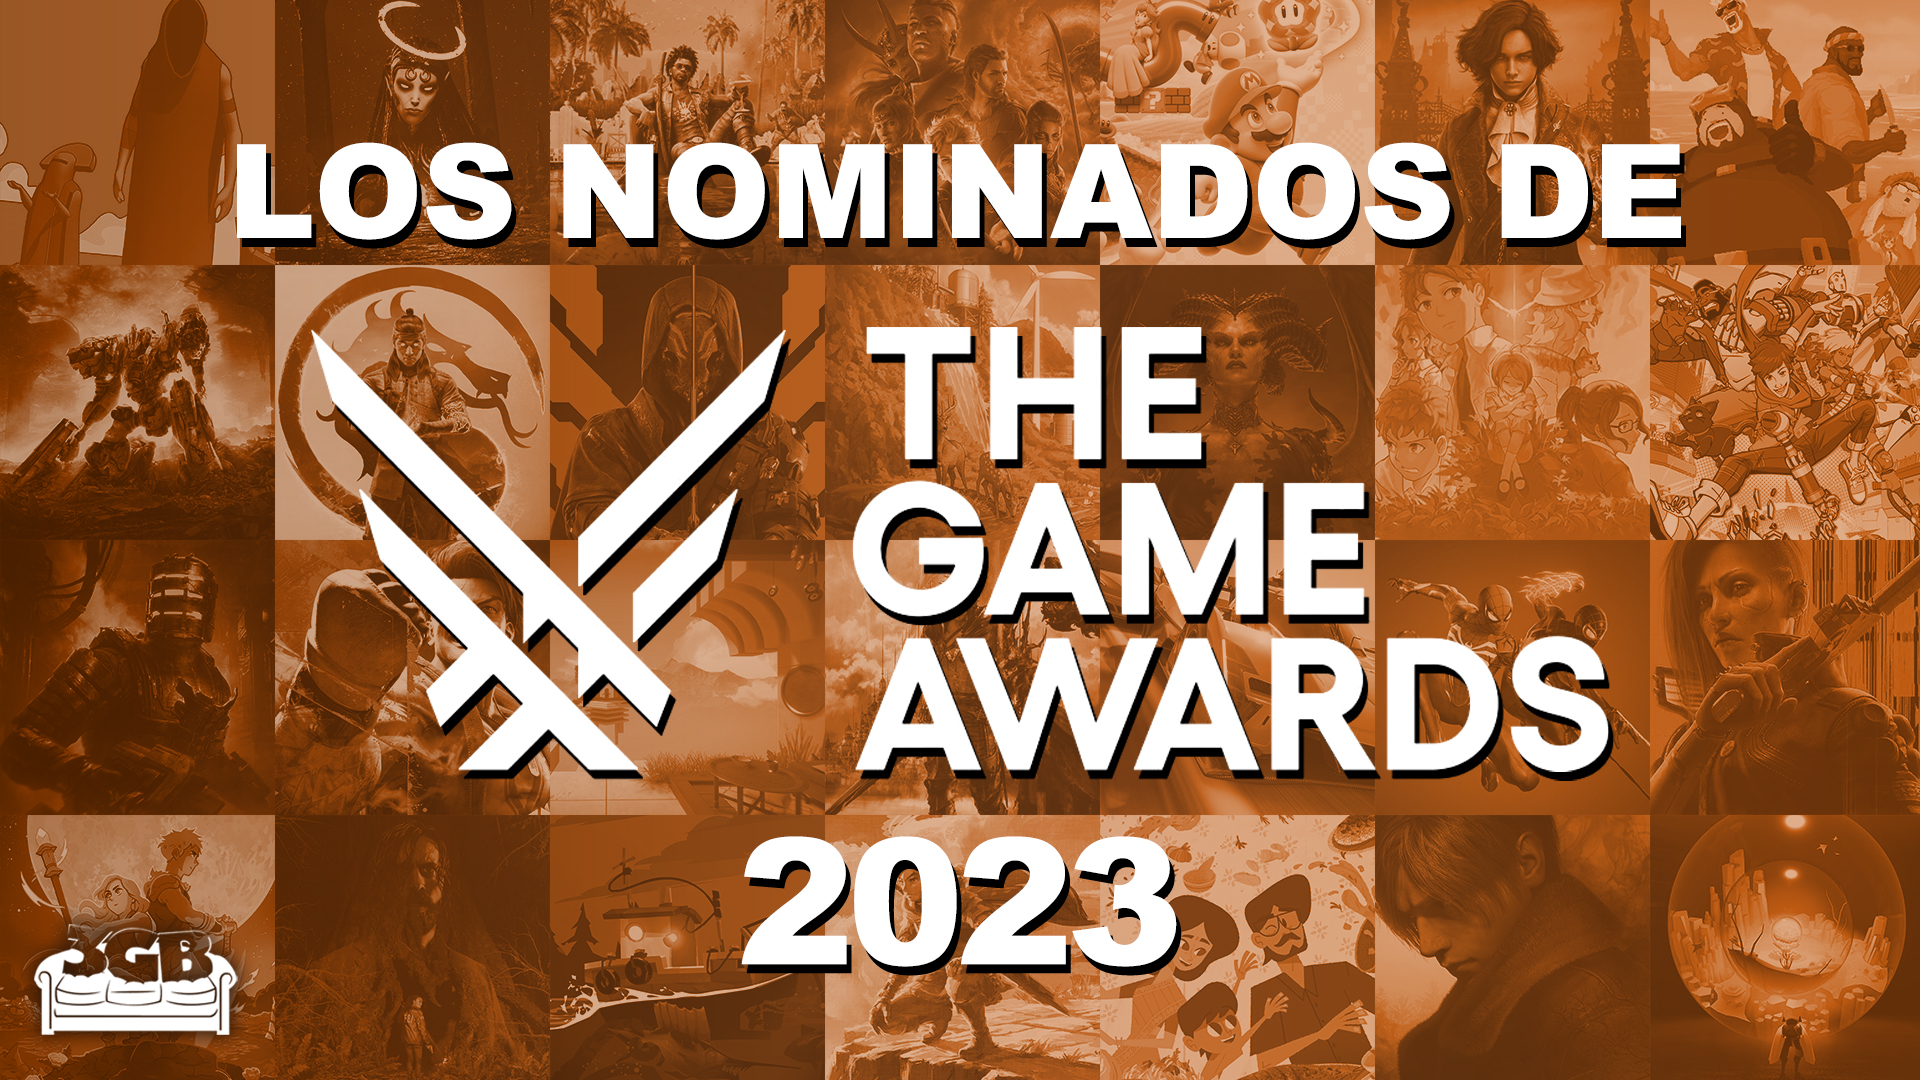 Checando los nominados de los The Game Awards 2023